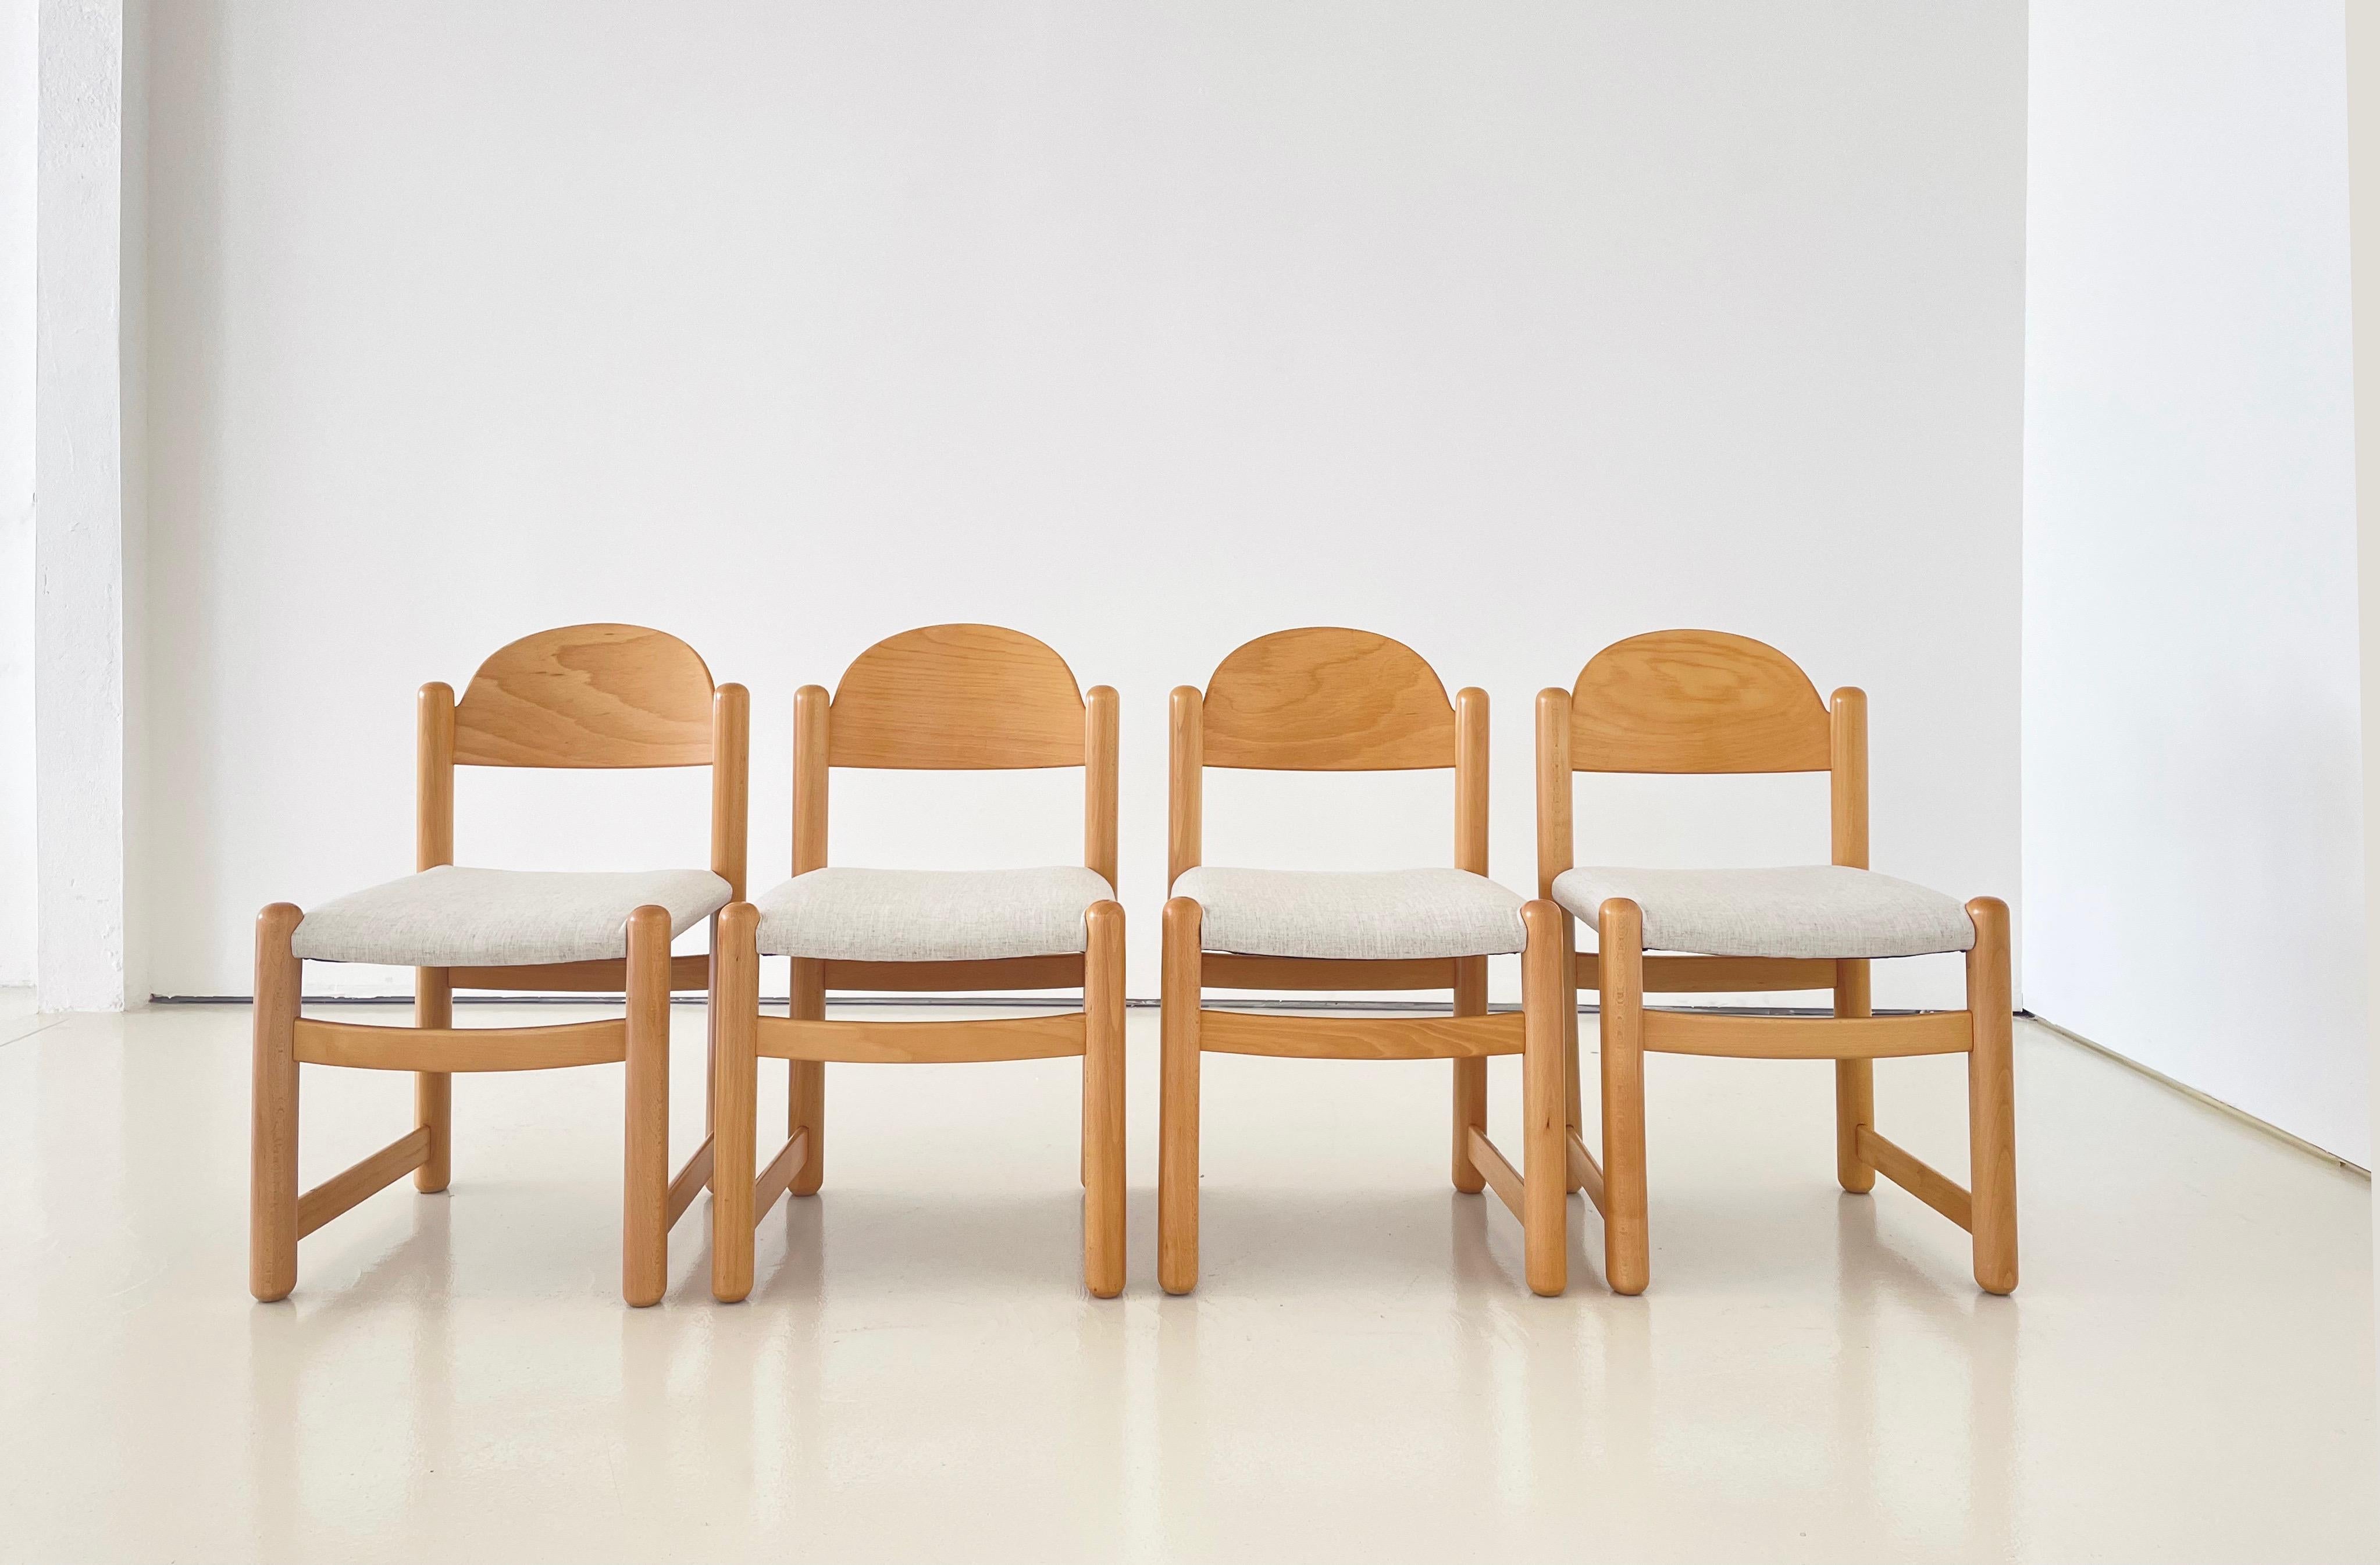 Entworfen und verkauft von Hank Lowenstein in den 1970er Jahren.

Vier Stühle aus einer Originalgarnitur.

Alle Sitze sind neu gepolstert mit einem Stoff von Bernhardt Interiors, Style 1429-100 Simplicity in Oatmeal und 100% natürlicher